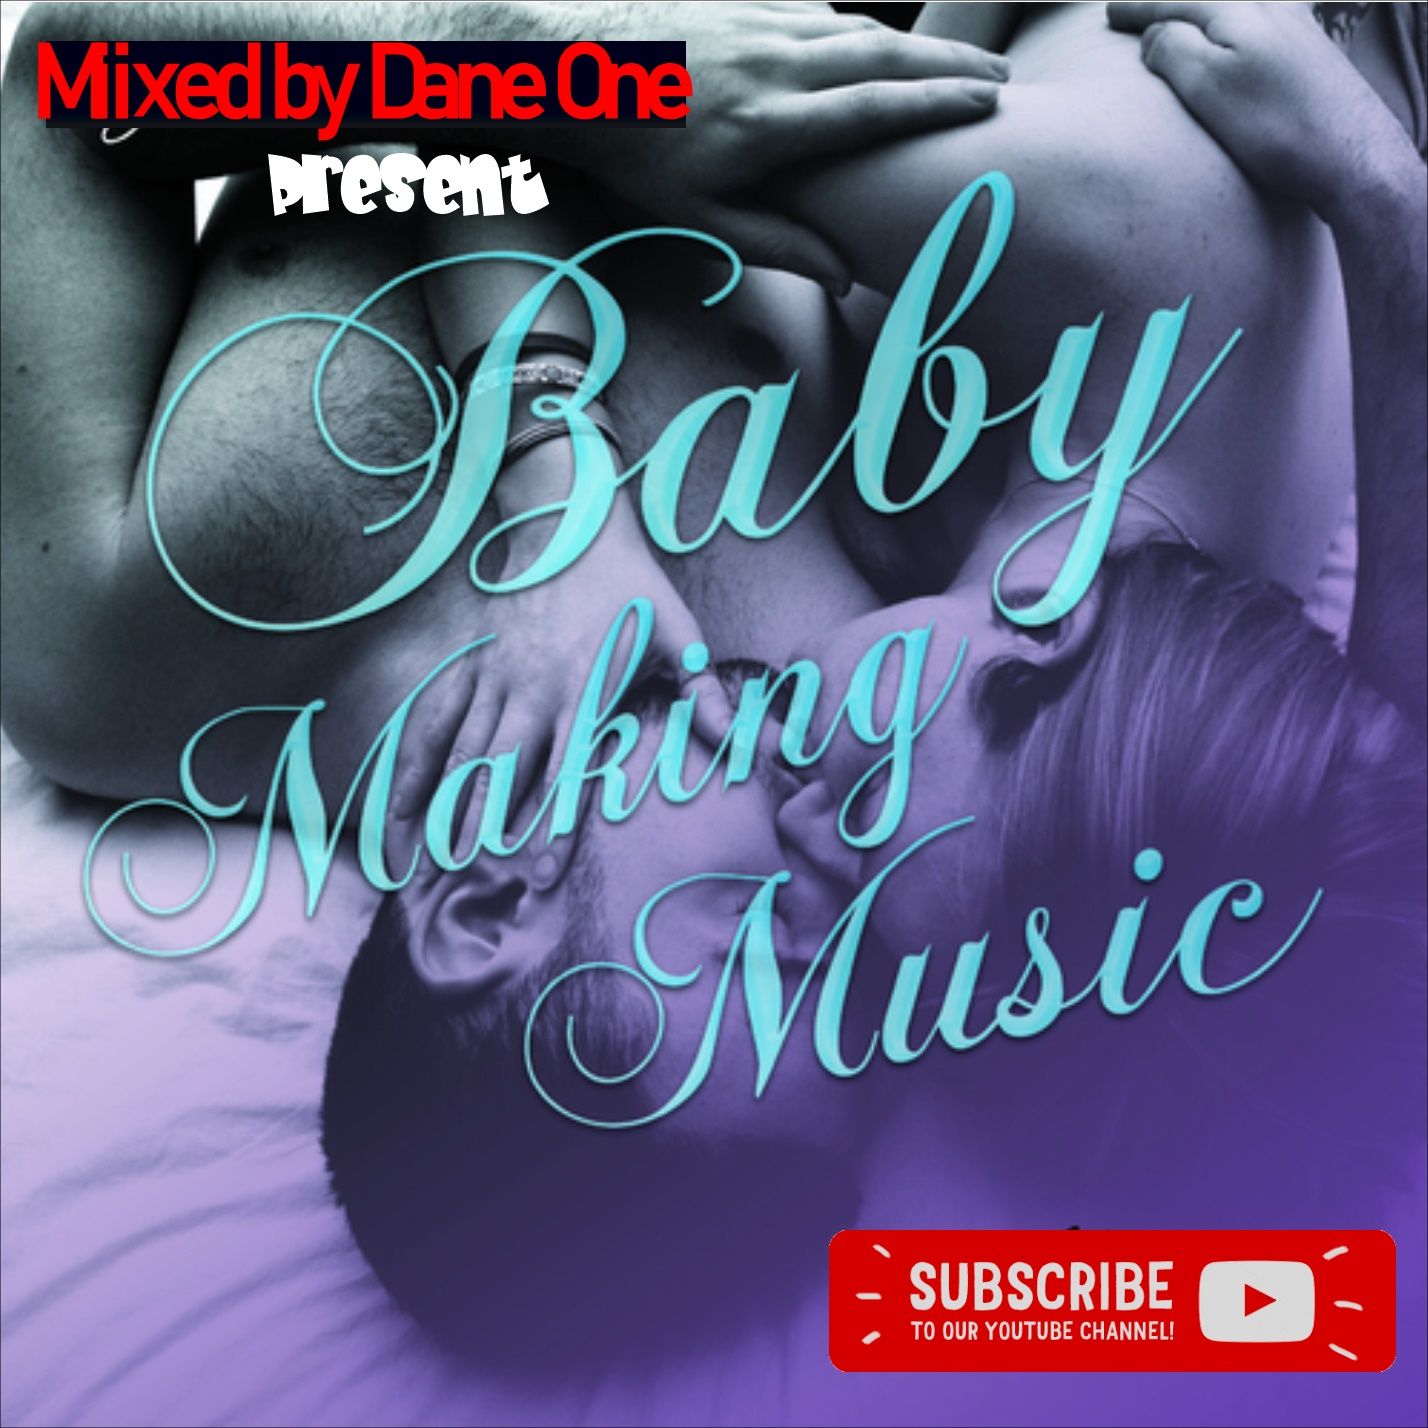 90'𝘚 Baby Making Music 𝘔ix ~ 𝘉𝘳𝘢𝘯𝘥𝘺, 𝘞𝘩𝘪𝘵𝘯𝘦𝘺 𝘏𝘰𝘶𝘴𝘵𝘰𝘯, 𝘚𝘞𝘝